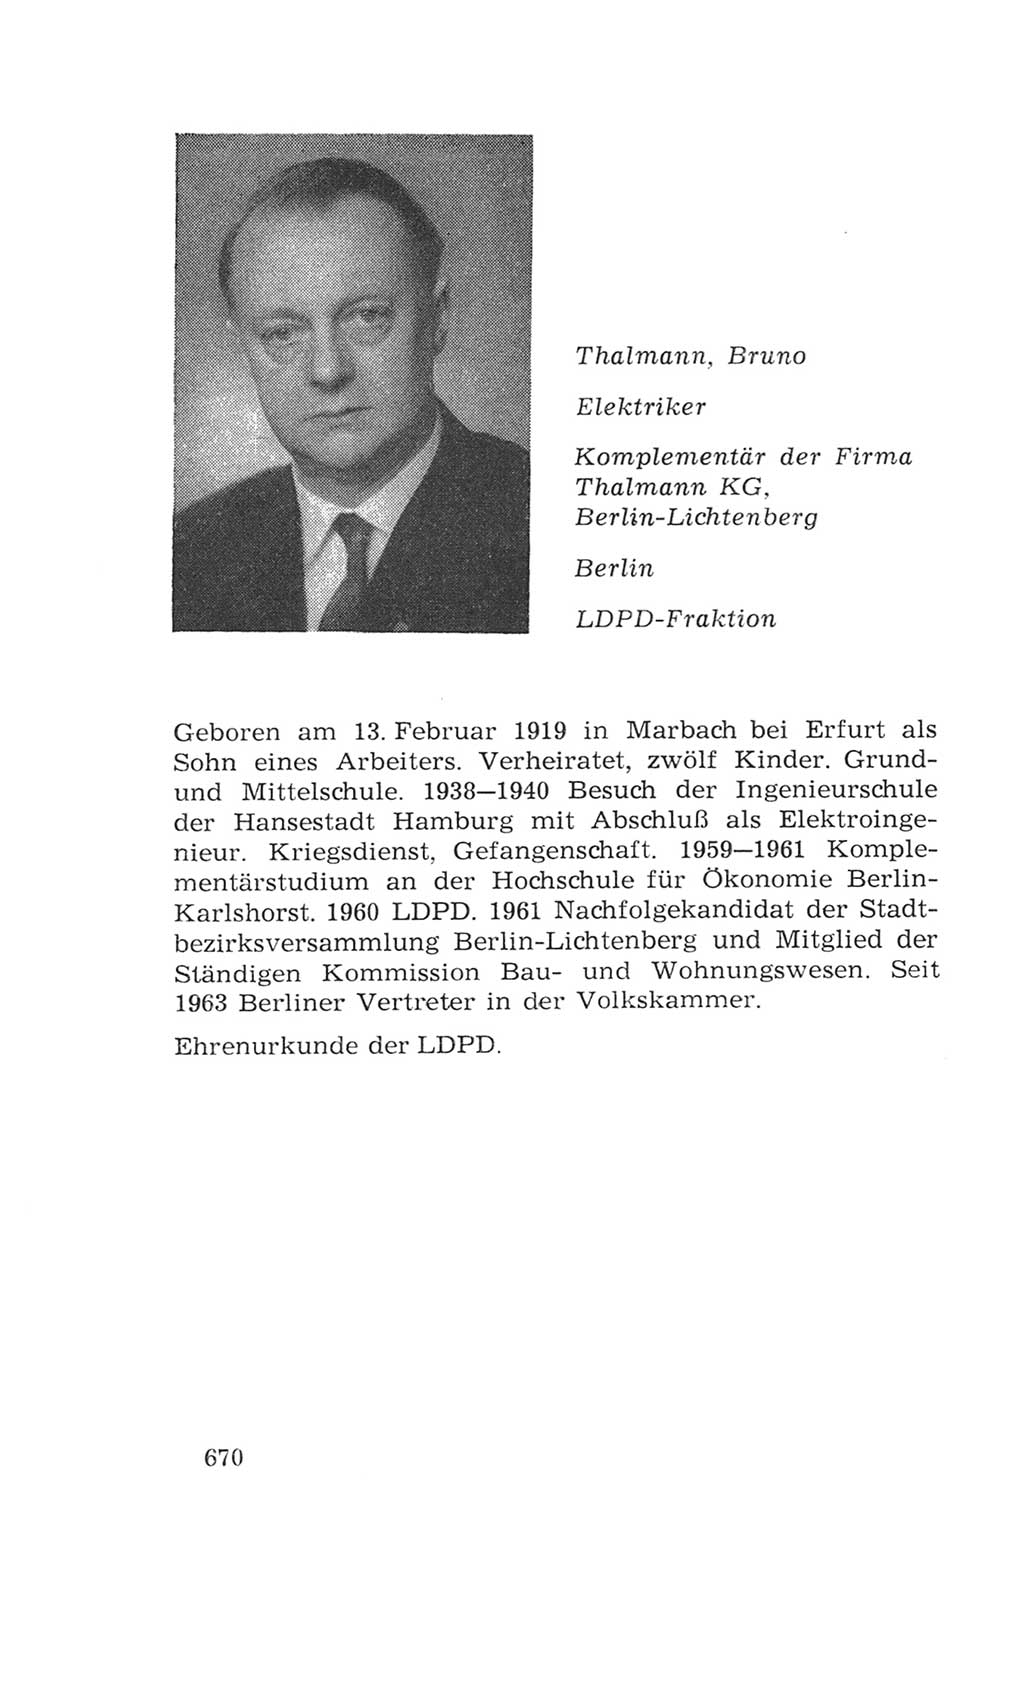 Volkskammer (VK) der Deutschen Demokratischen Republik (DDR), 4. Wahlperiode 1963-1967, Seite 670 (VK. DDR 4. WP. 1963-1967, S. 670)